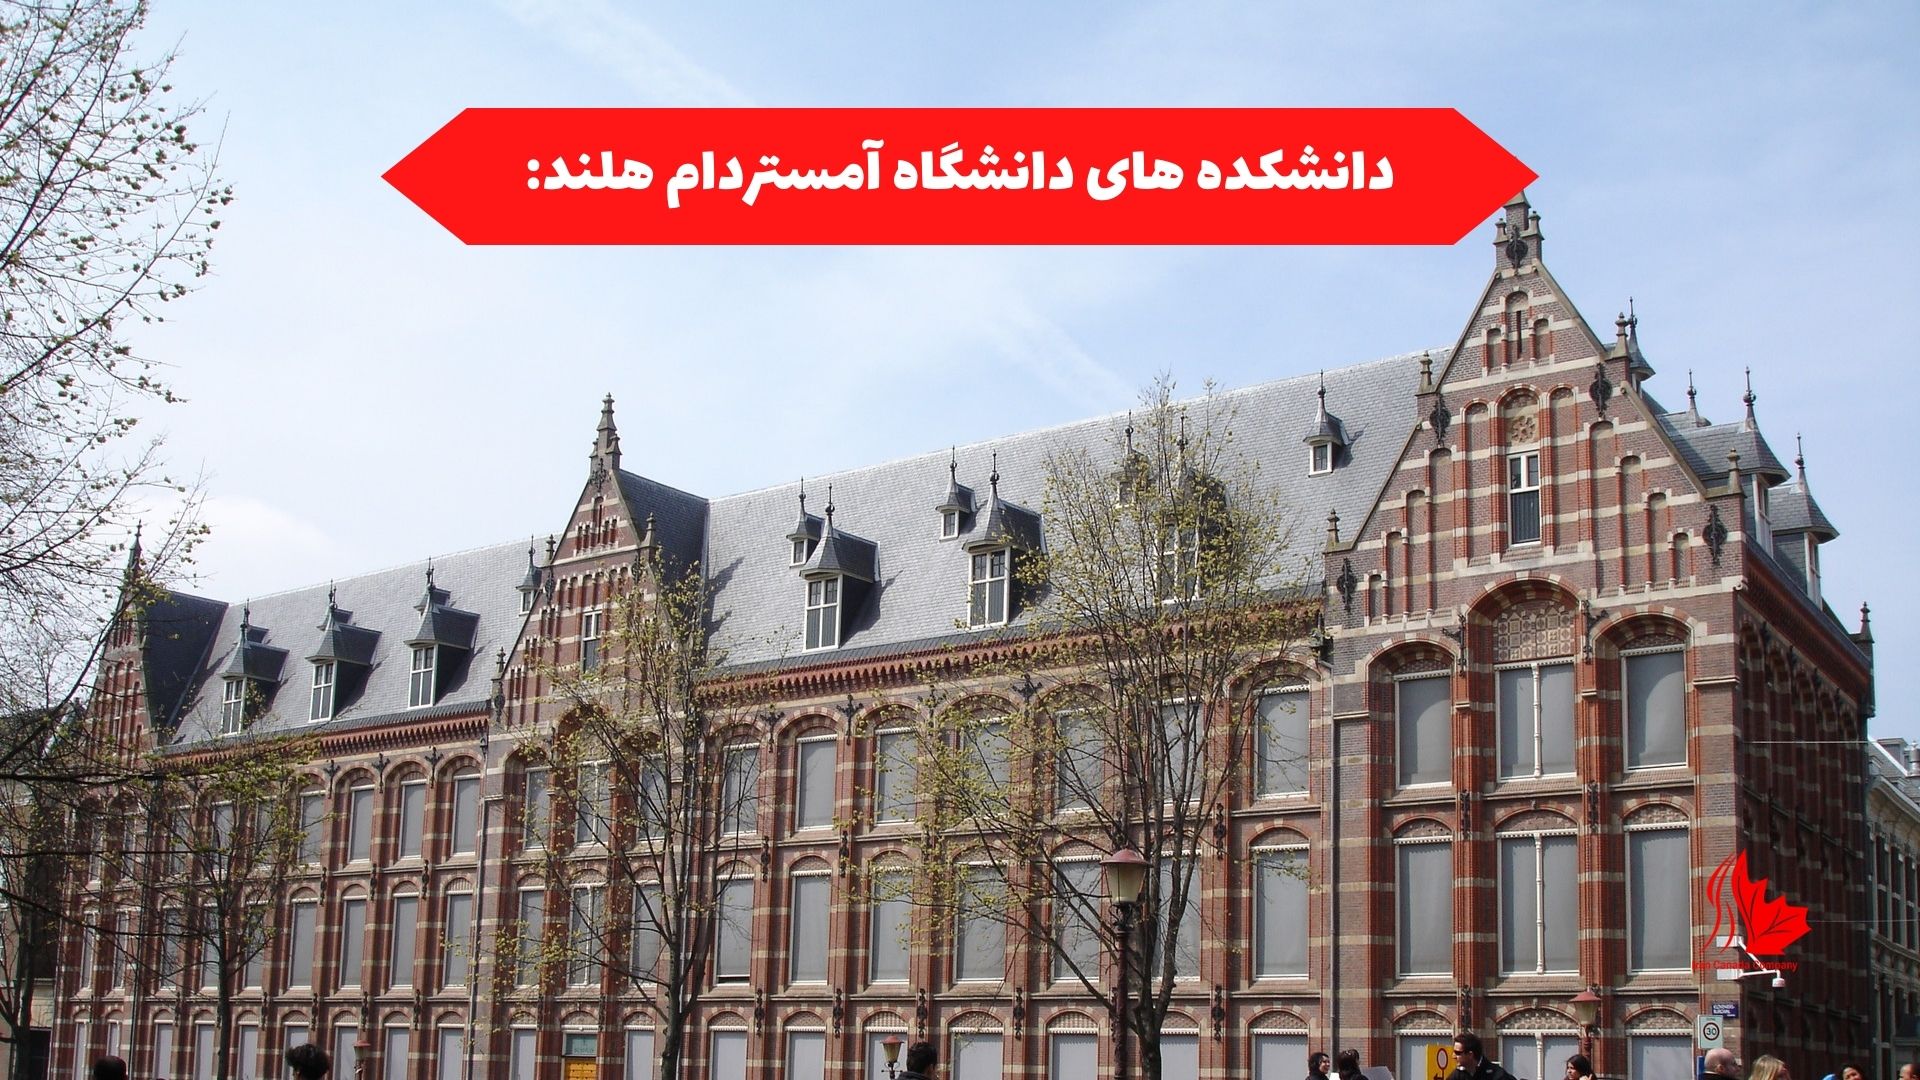 دانشکده های دانشگاه آمستردام هلند